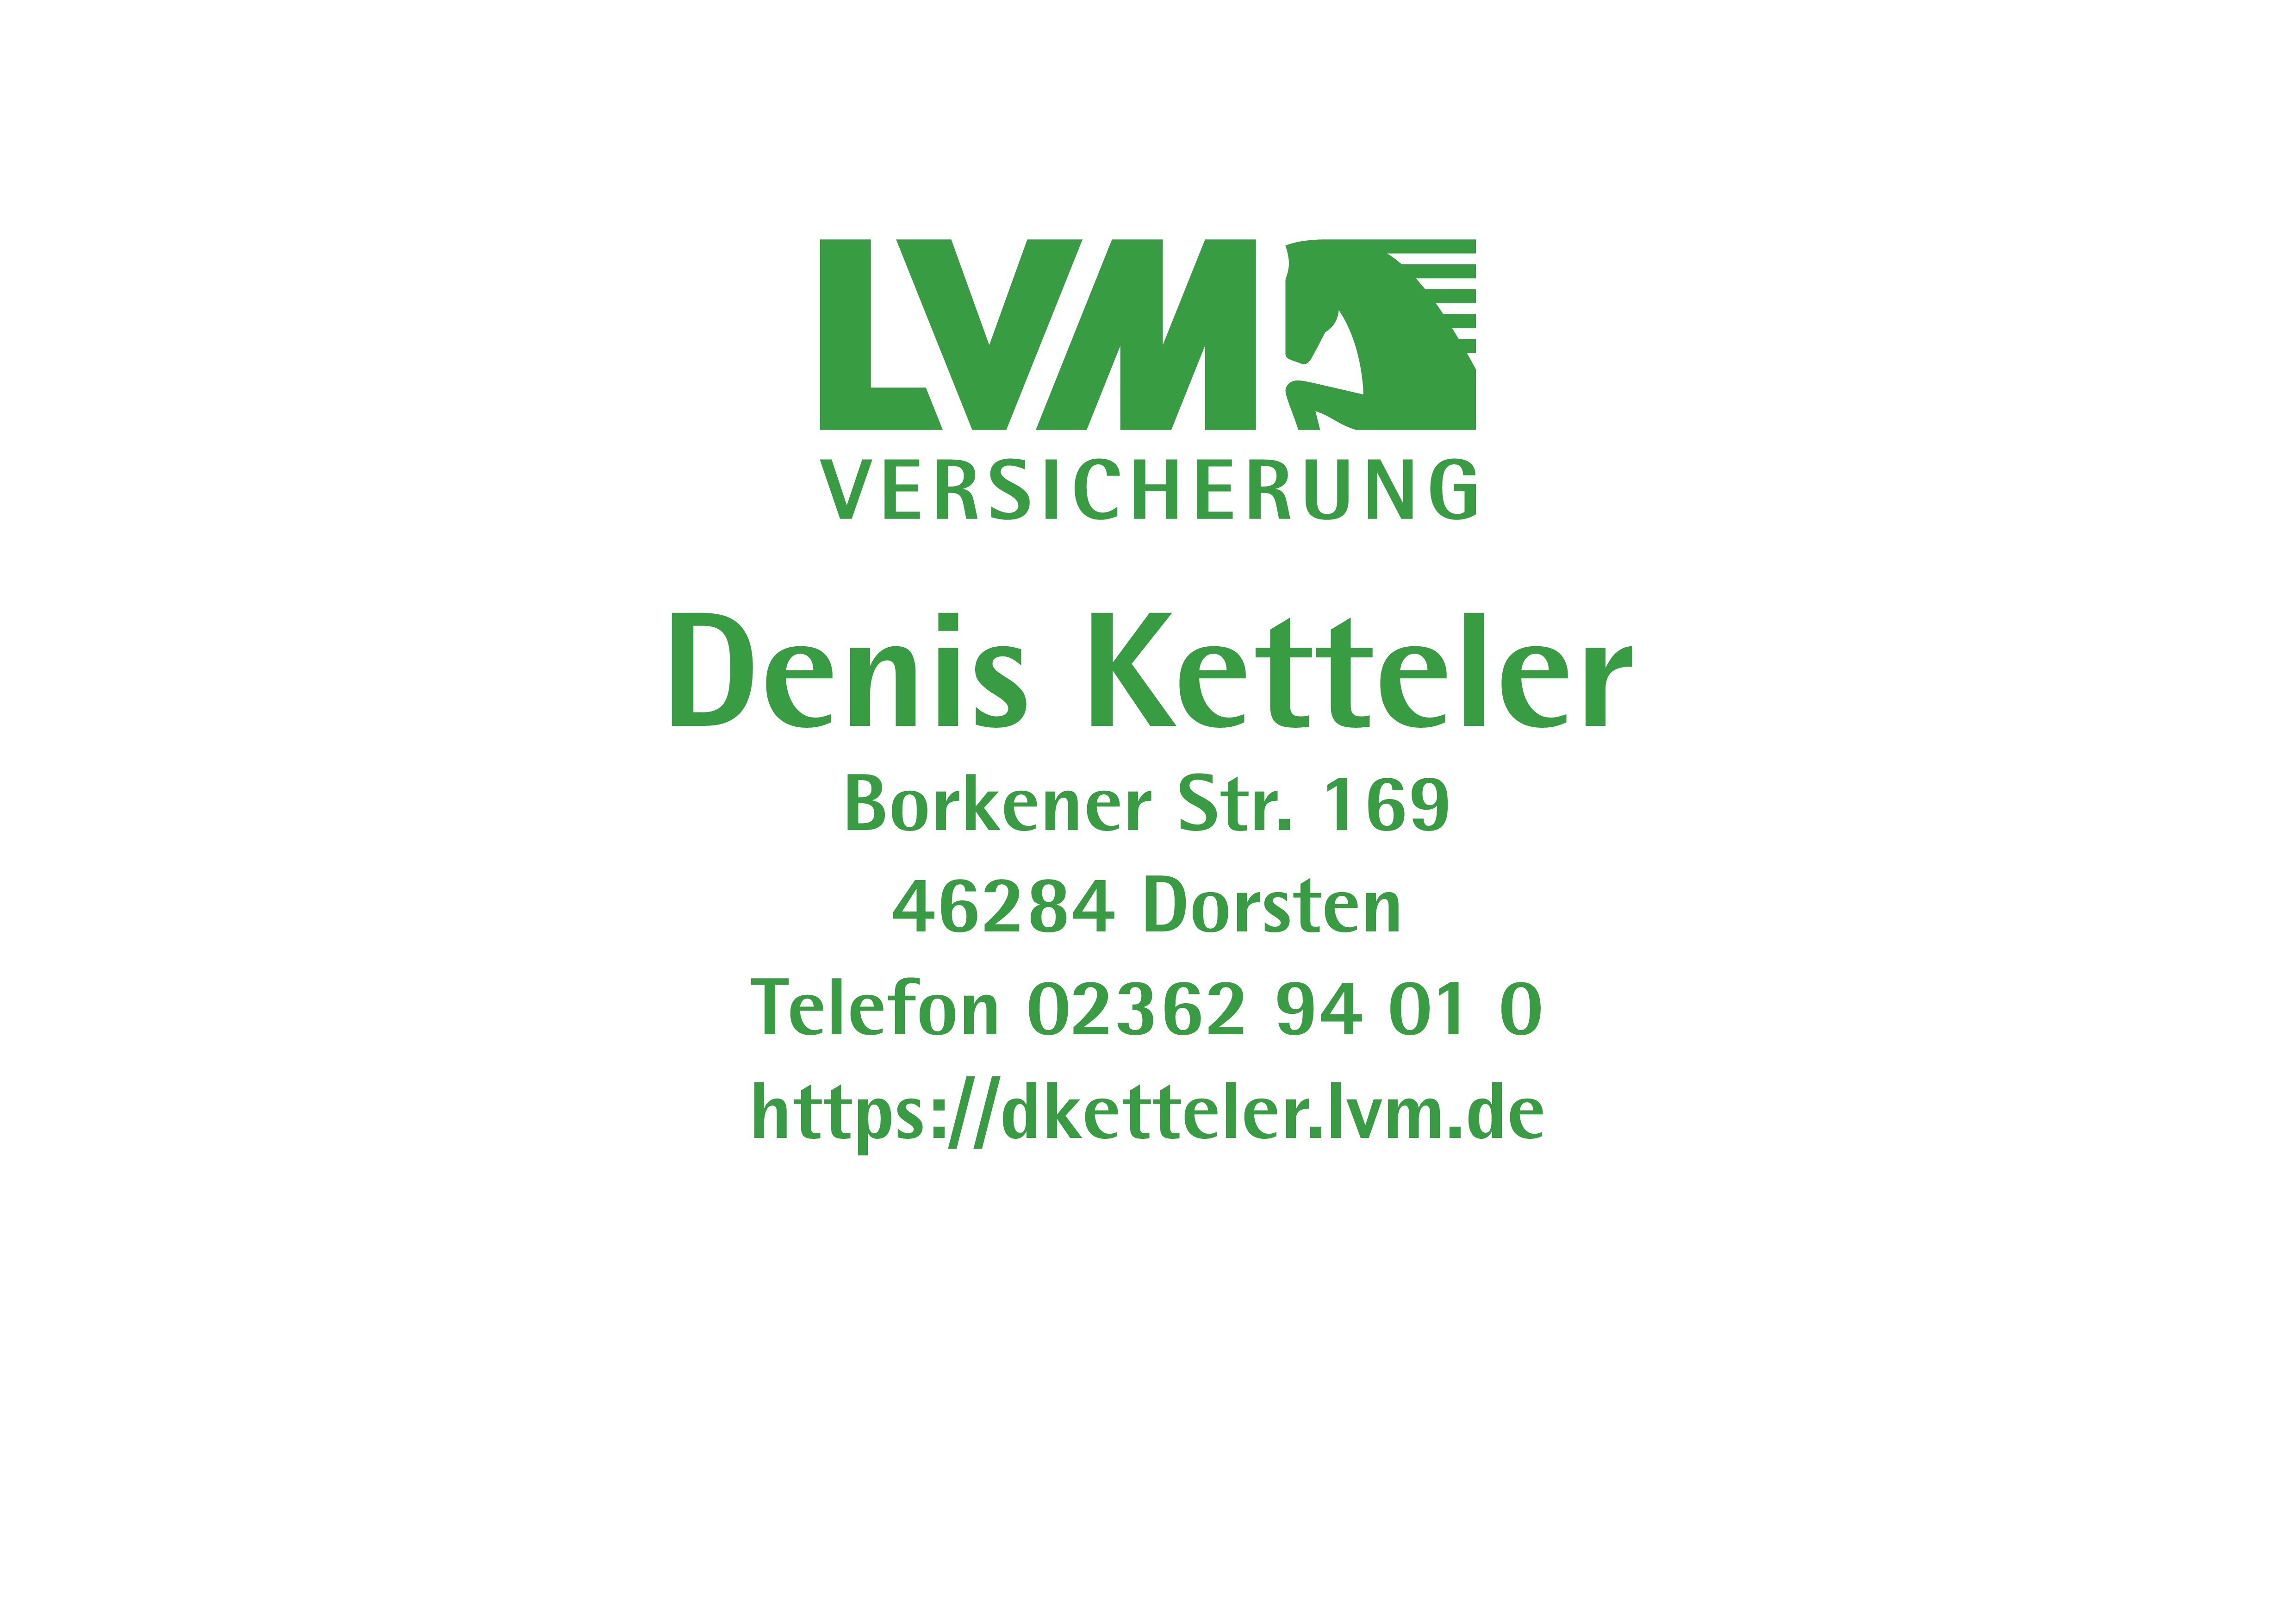 Denis Ketteler